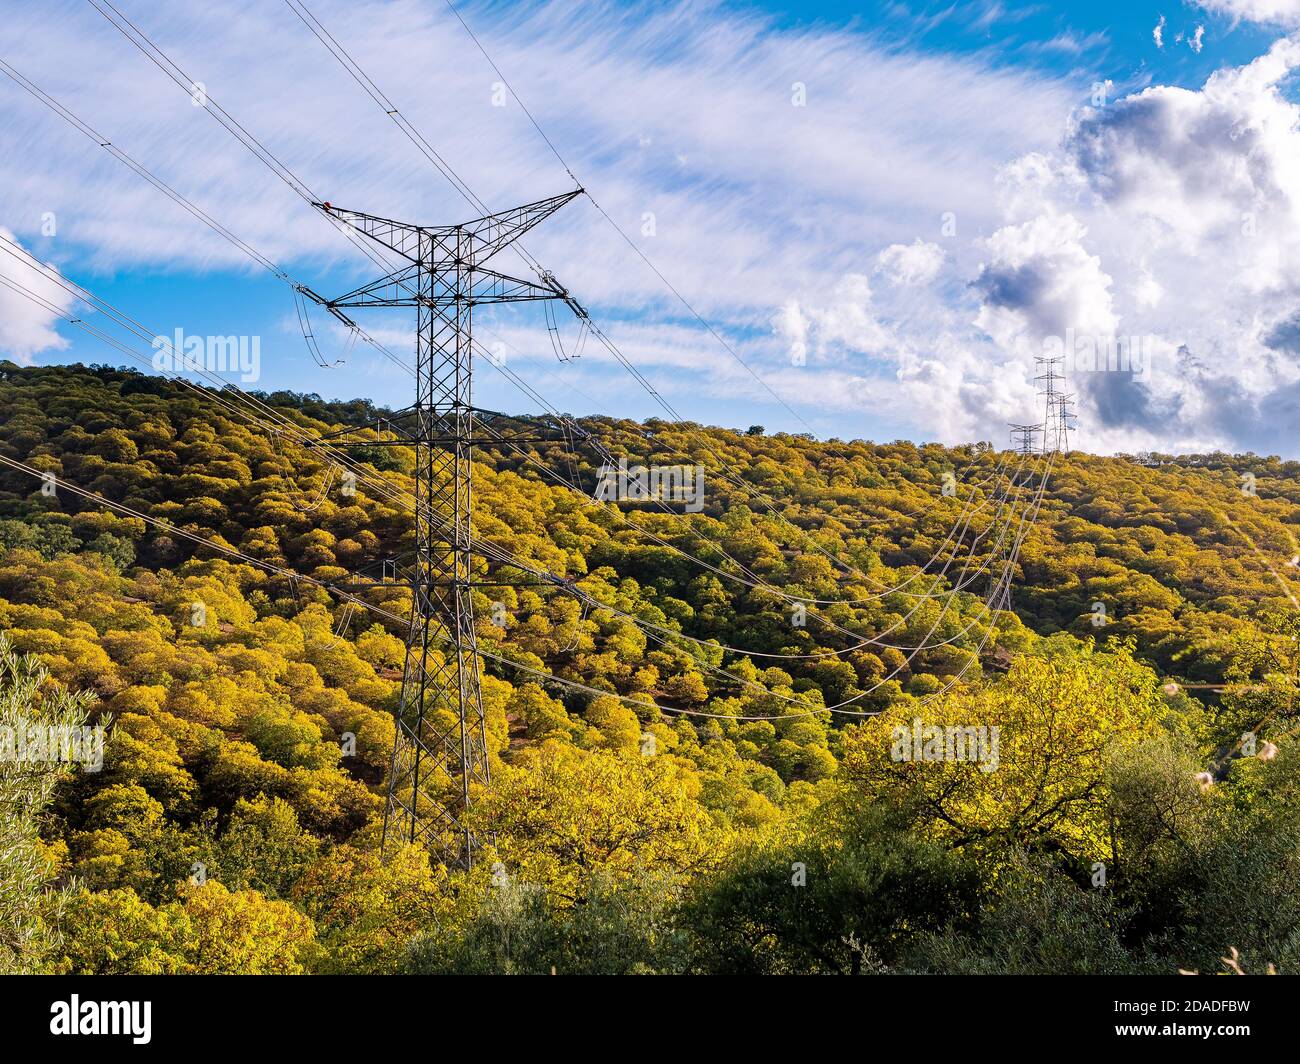 Stromturm in einem Herbstwald bei Sonnenuntergang. Energiekonzept Ökologie. Stockfoto